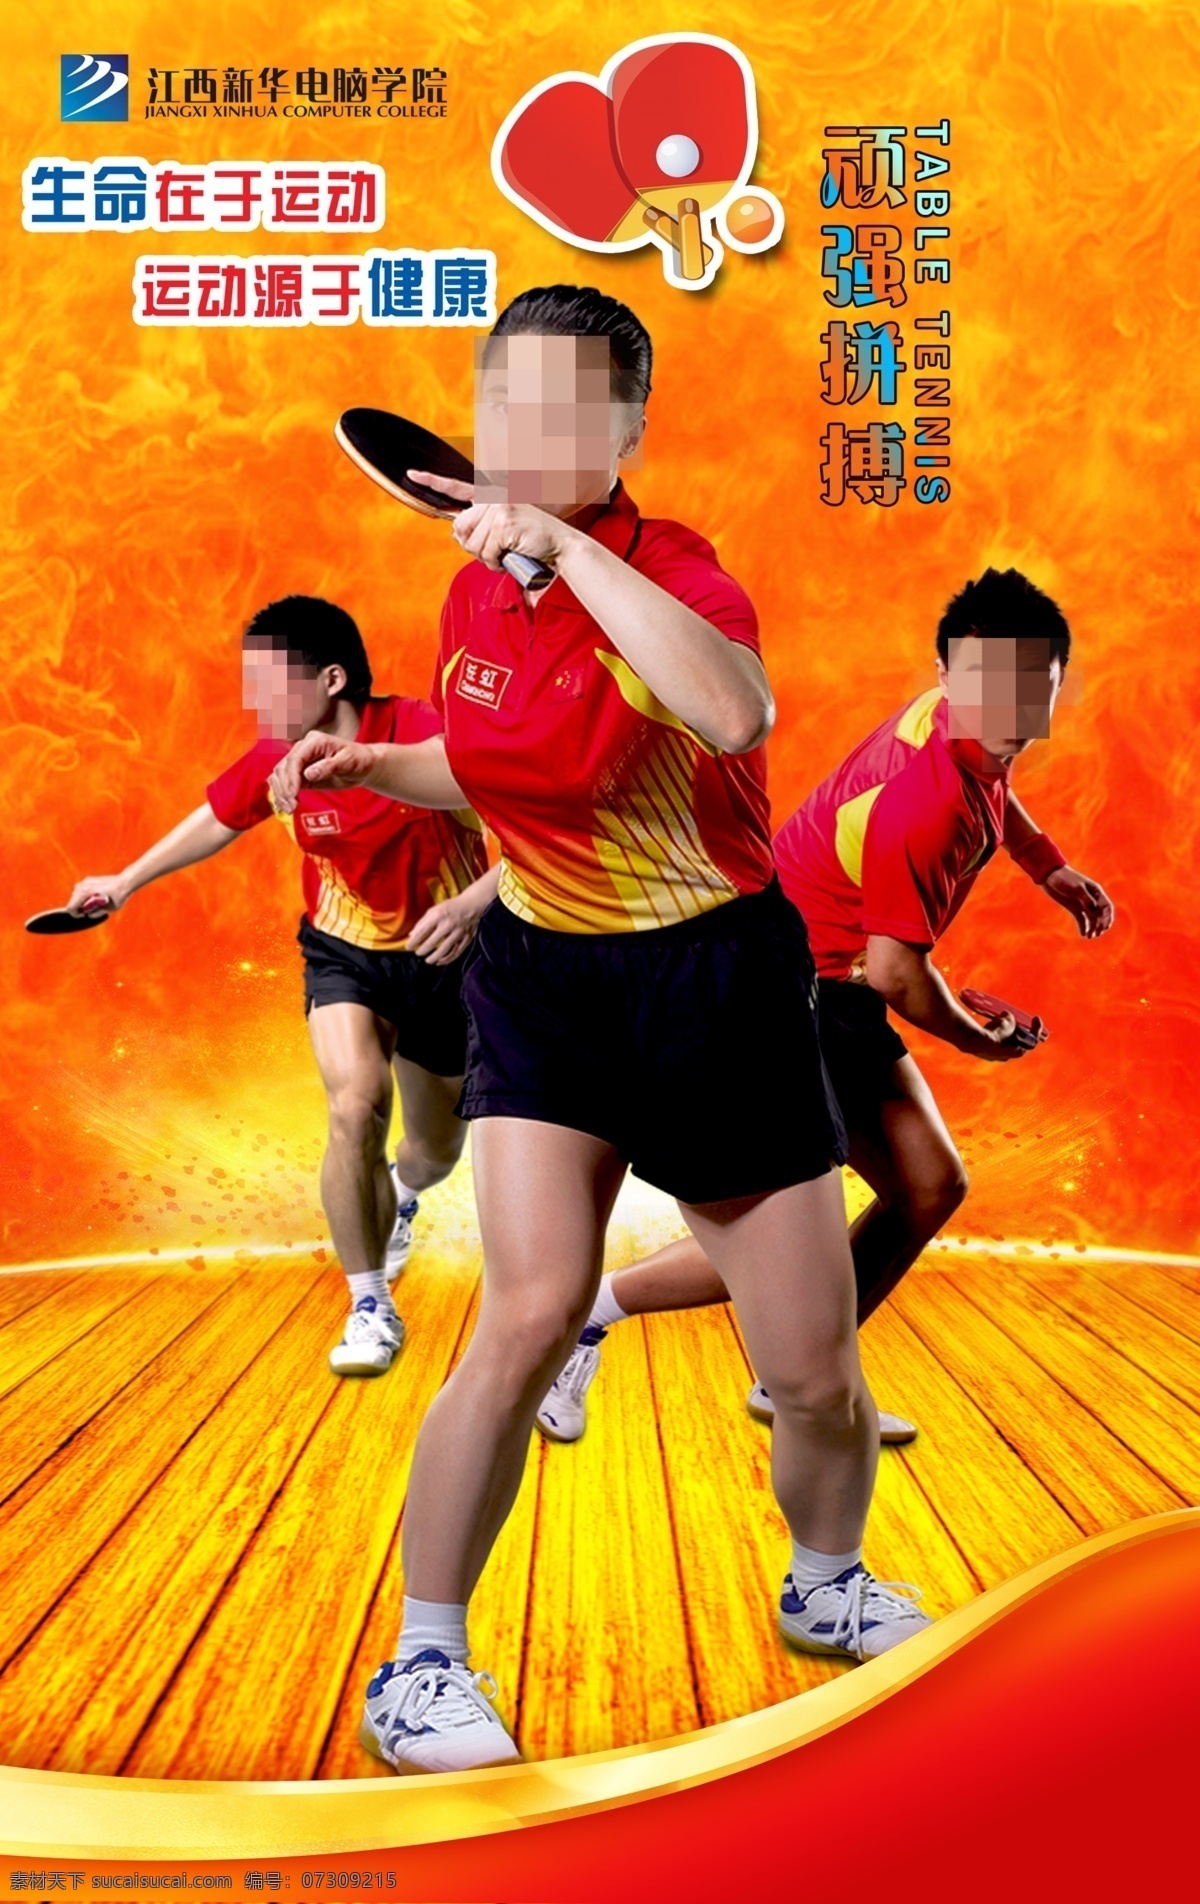 乒乓球 乒乓球海报 青少年乒乓球 海报 乒乓球比赛 乒乓球展板 卡通运动人物 橙色背景 分层 橙色